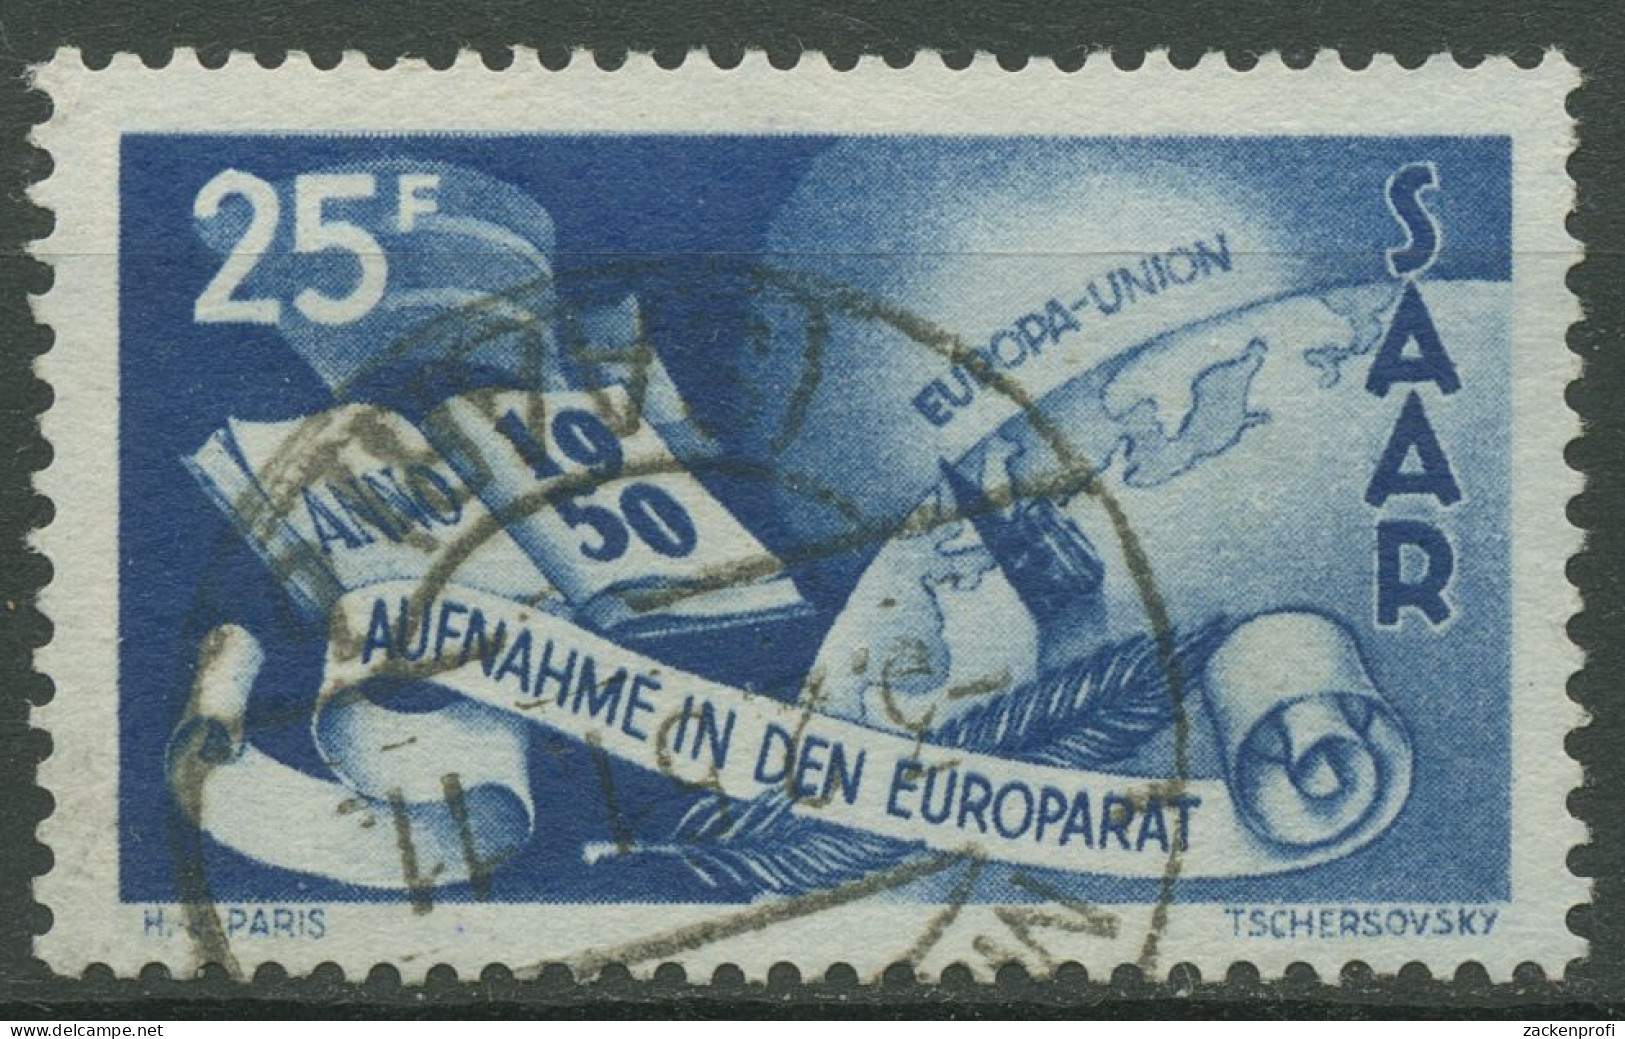 Saarland 1950 Aufnahme Des Saarlandes In Den Europarat 297 Gestempelt - Oblitérés